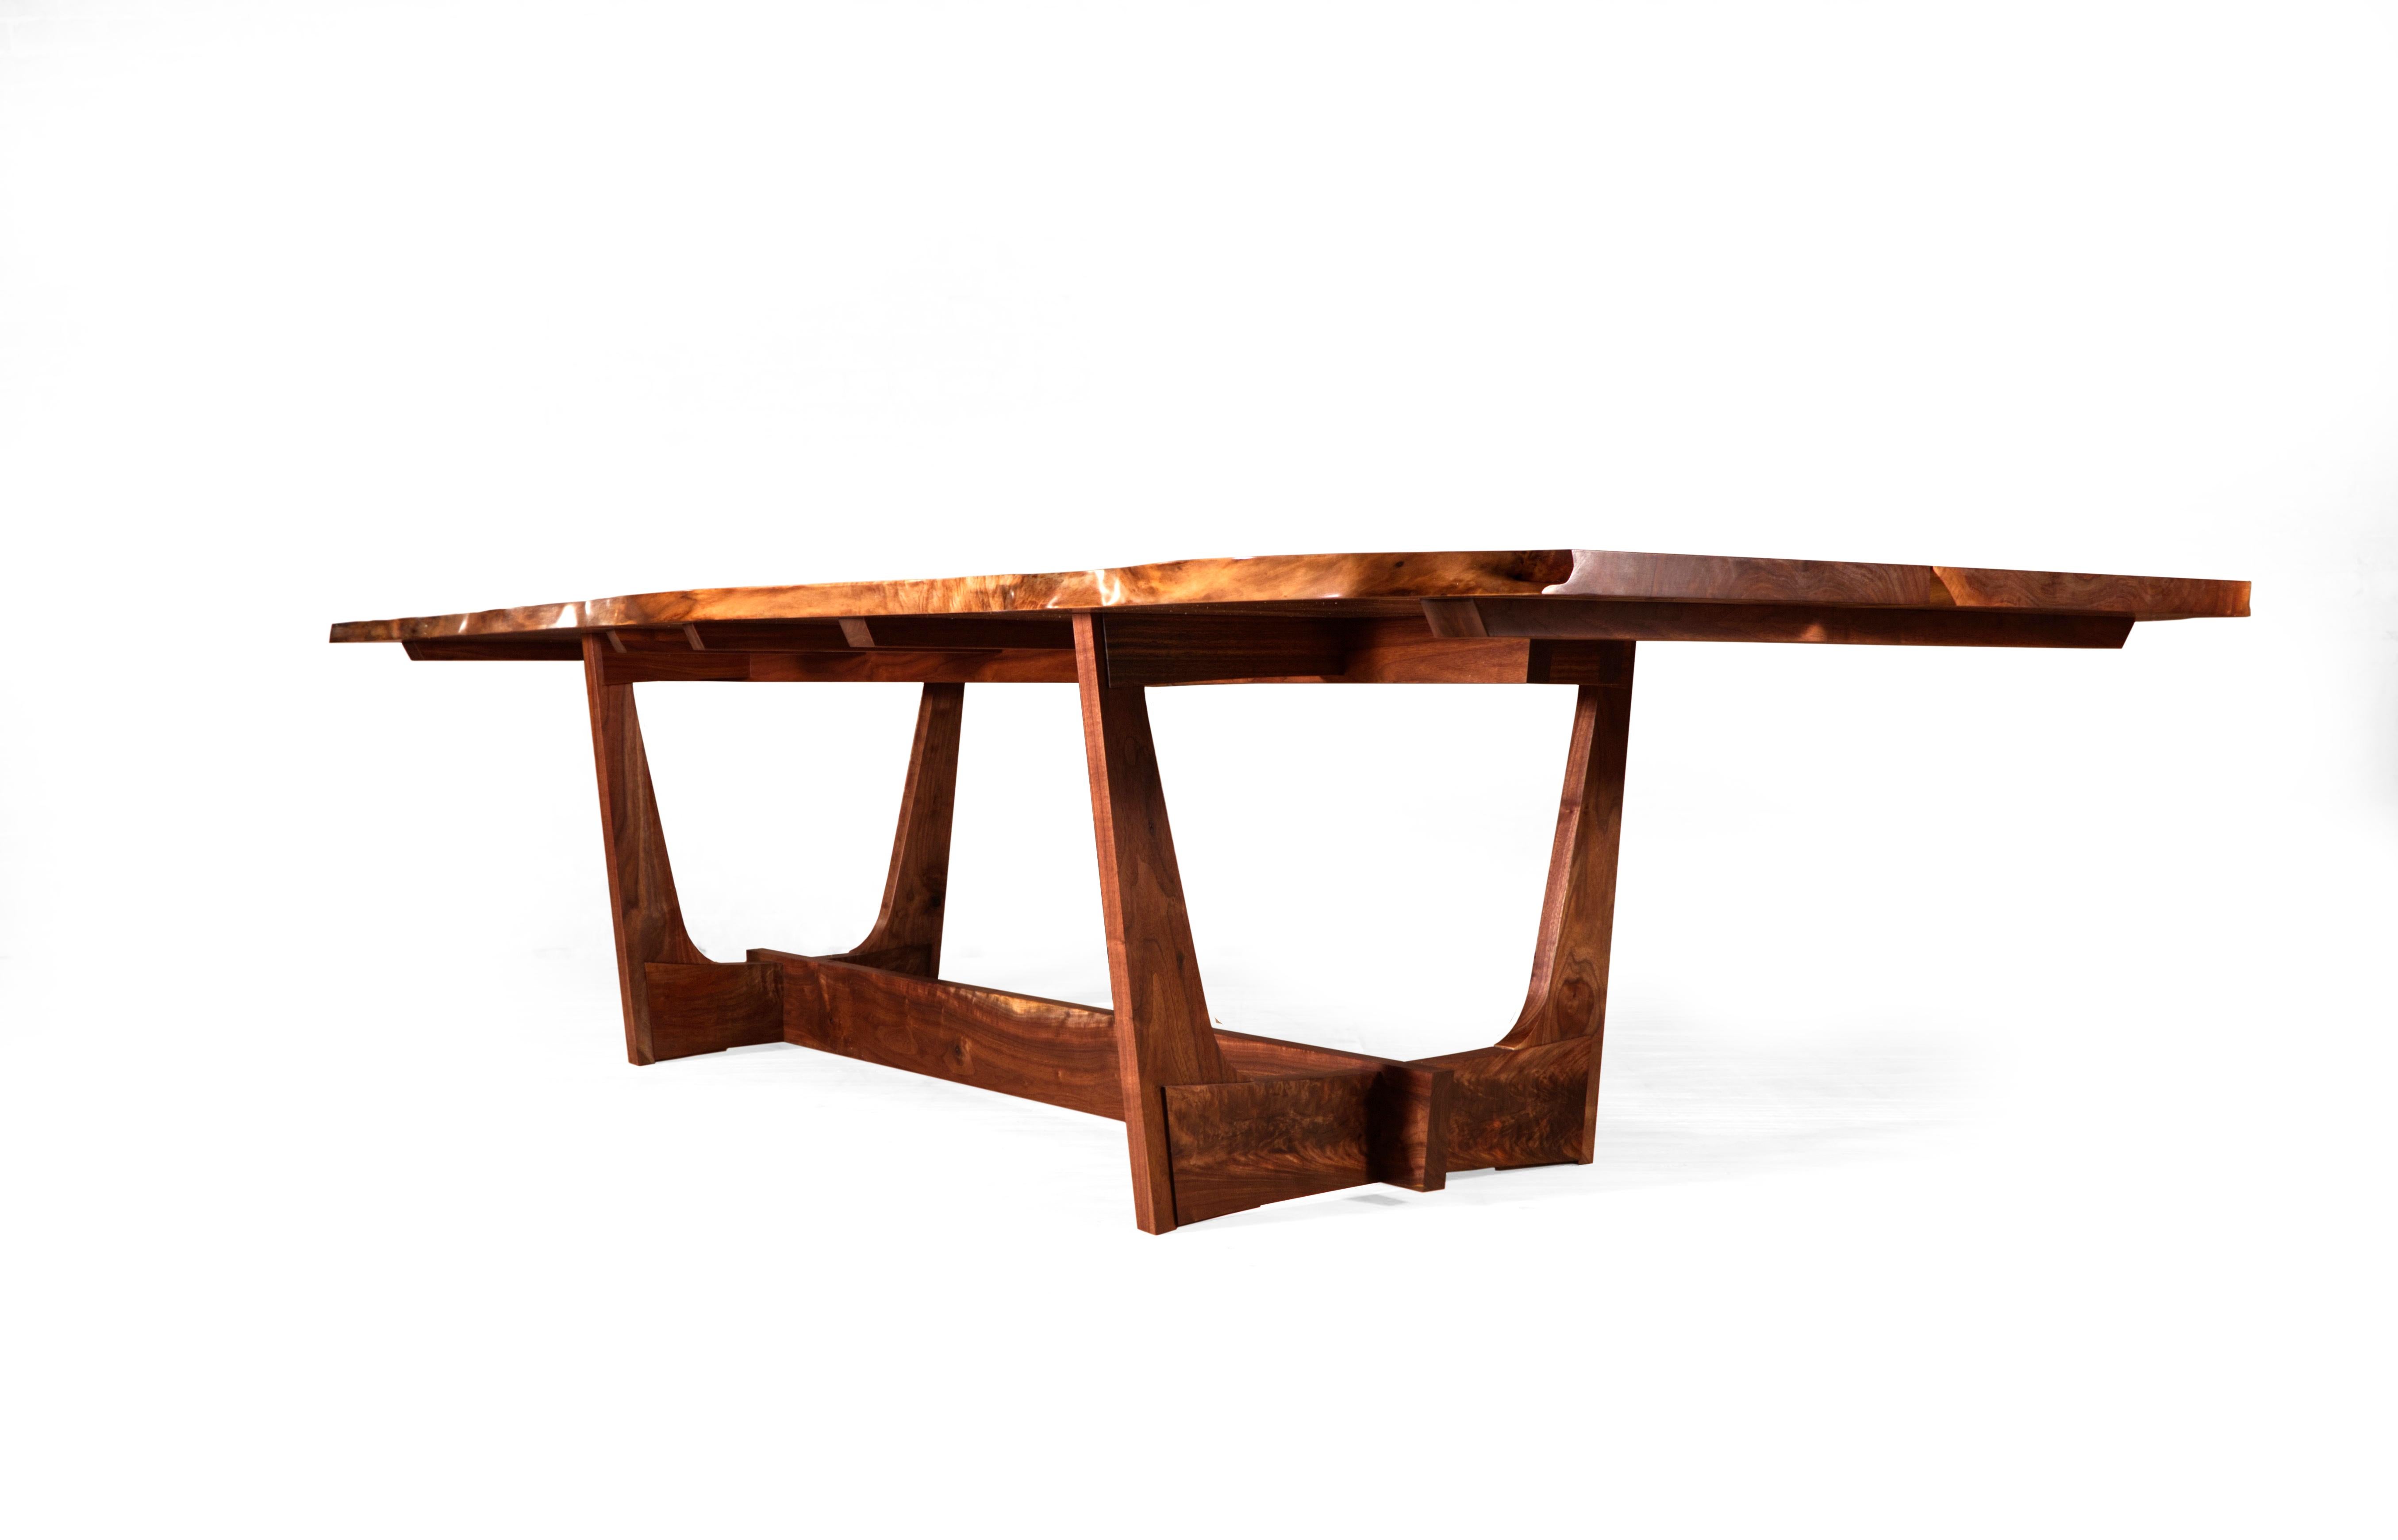 Der Lake Tahoe-Tisch ist ein Zeugnis für gutes Handwerk. Die schlichte Form des Tisches, der nach den Grundsätzen der handwerklichen Tischlerei entworfen wurde, unterstreicht sowohl die Auswahl des Holzes als auch die handwerkliche Verarbeitung.